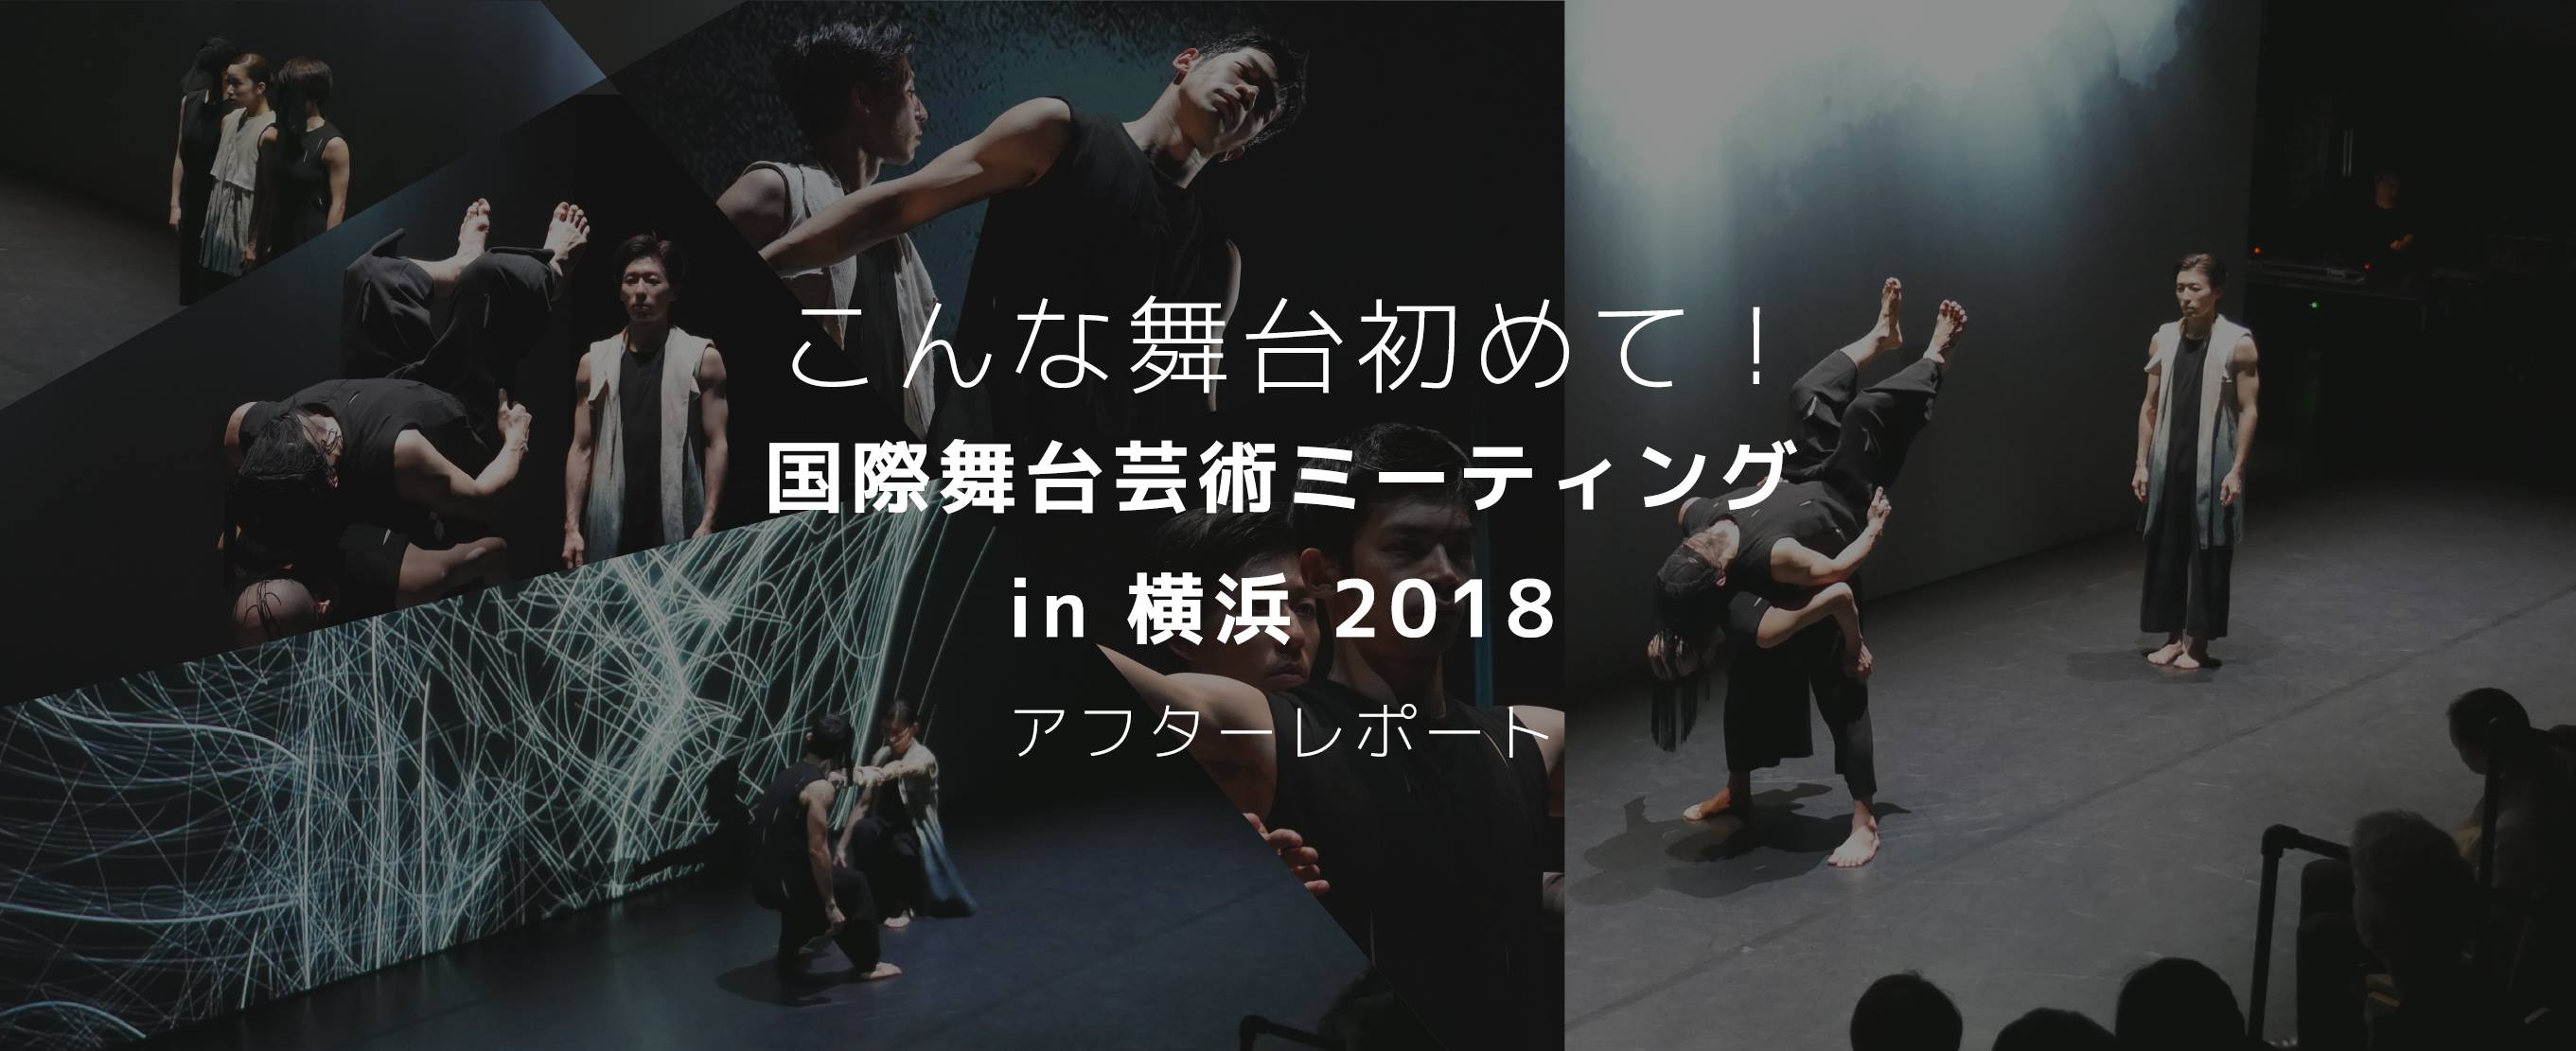 こんな舞台初めて！『国際舞台芸術ミーティング in 横浜 2018』アフターレポート